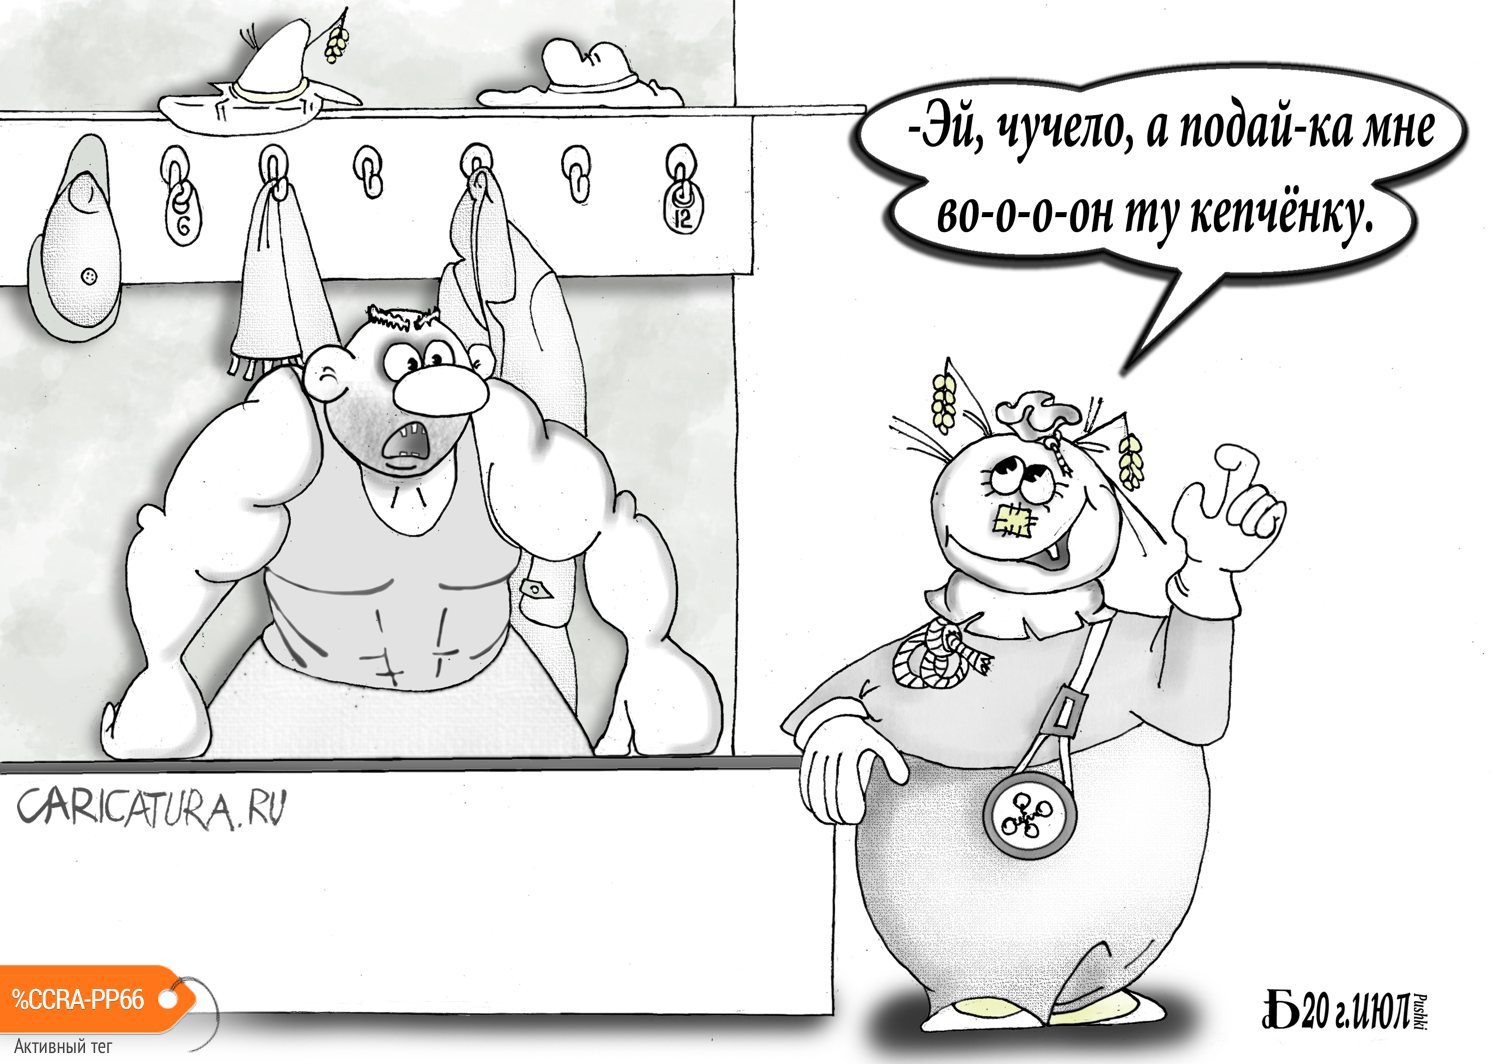 Карикатура "Про Страшилу из Изумрудного...", Борис Демин